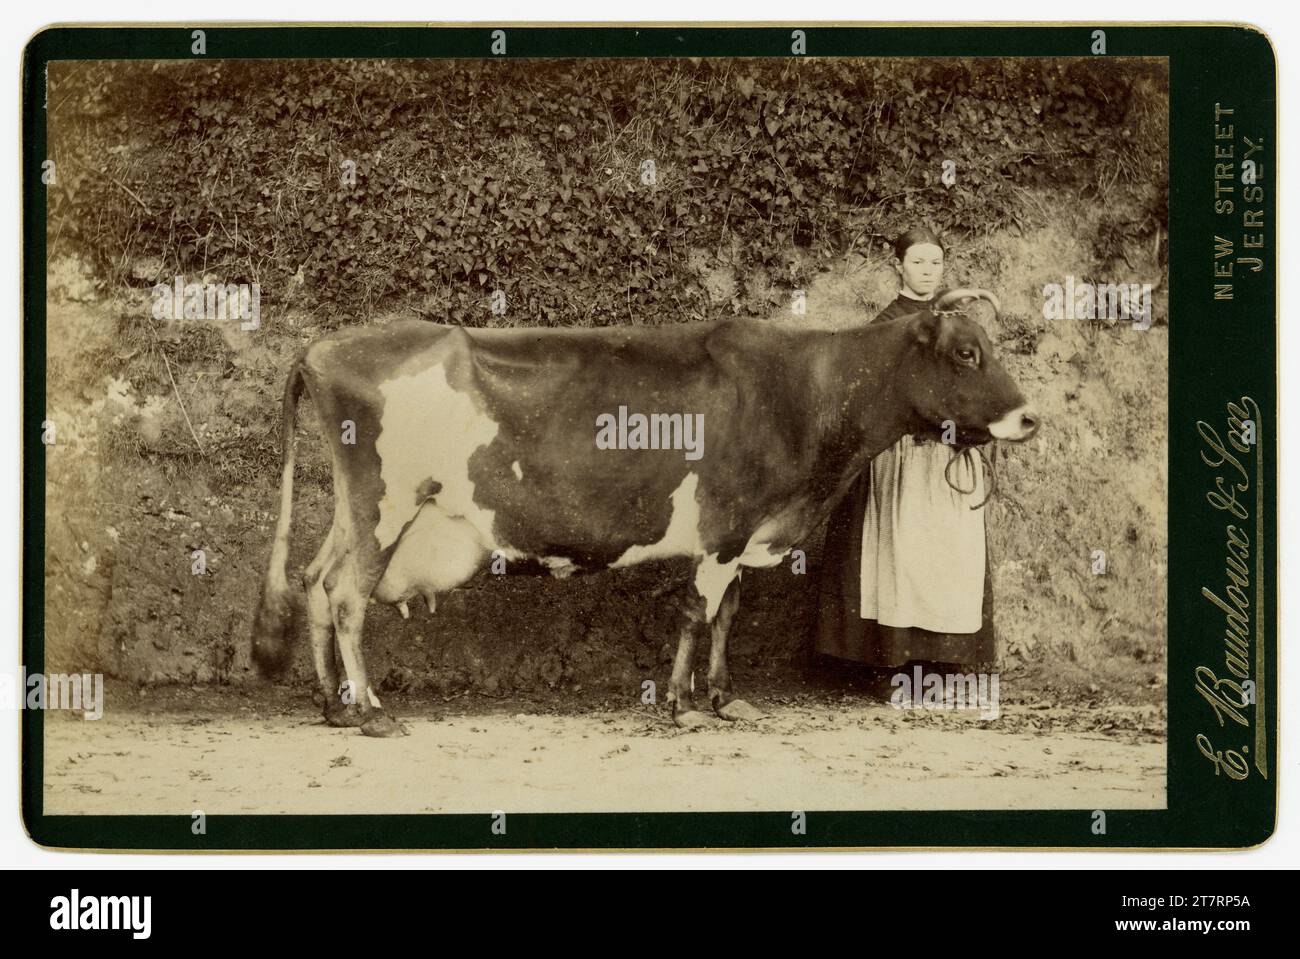 Originale, sehr klare Schrankkarte aus viktorianischer Zeit mit einer Schürze, die neben einer wunderschönen Alderney-Kuh steht, möglicherweise ein Preisträger. Fotografiert auf der Farm von dem damals bekannten Inselfotografen Ernest Baudoux & Son (der Sohn kam 1885 zu ihm). St. Helier, Jersey, die Kanalinseln. Es wird angenommen, dass es sich um eine Alderney-Kuh handelt. Die Alderney-Kuh stammt ursprünglich von den Kanalinseln und ist eine Kreuzung von Guernseys und Jerseys. Datiert auf 1885, 1886 oder 1887. Stockfoto